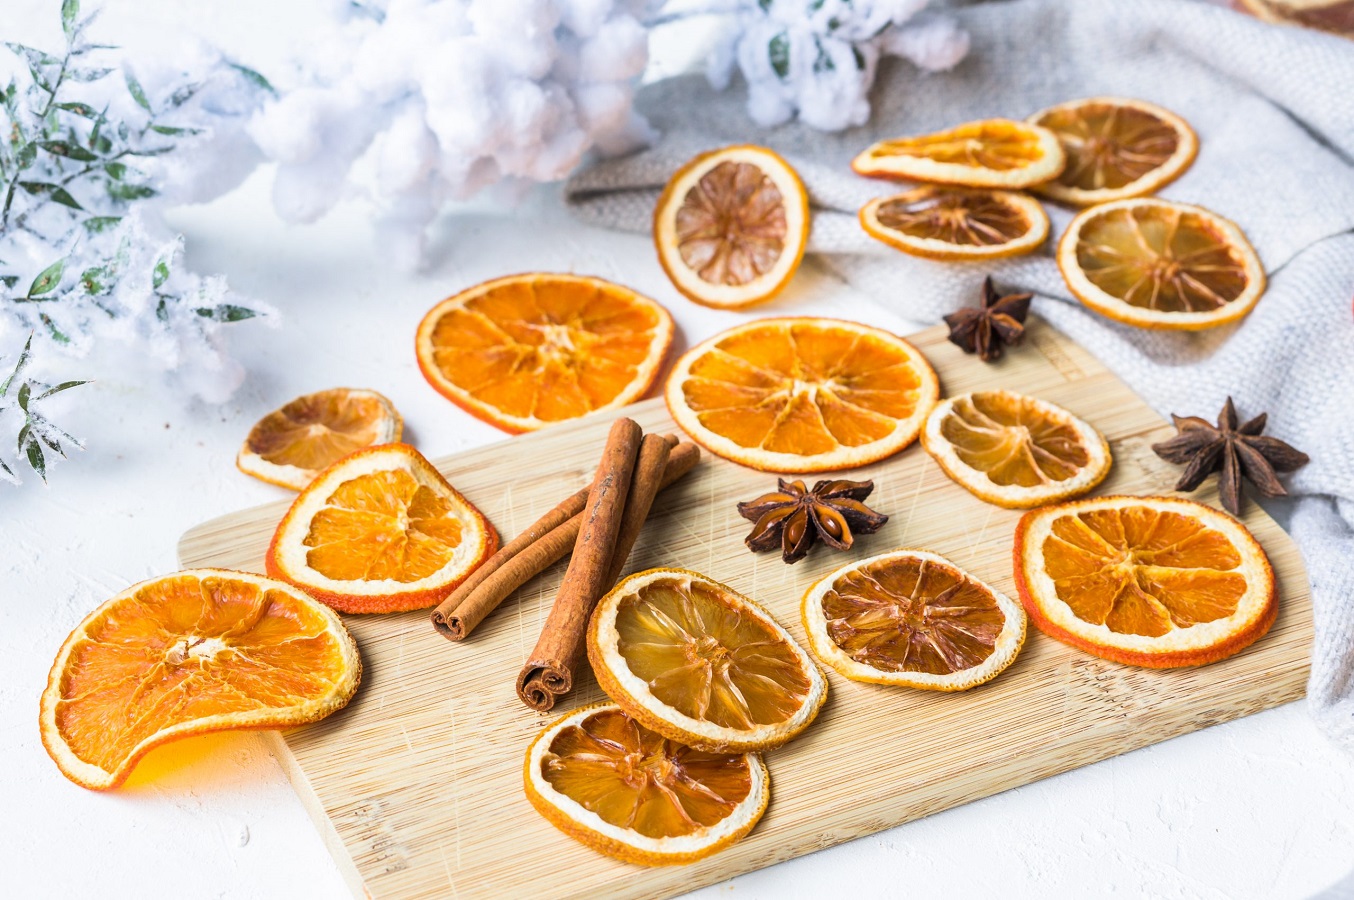 Как сушить дольки апельсина - 3 быстрых способа сушки апельсинов